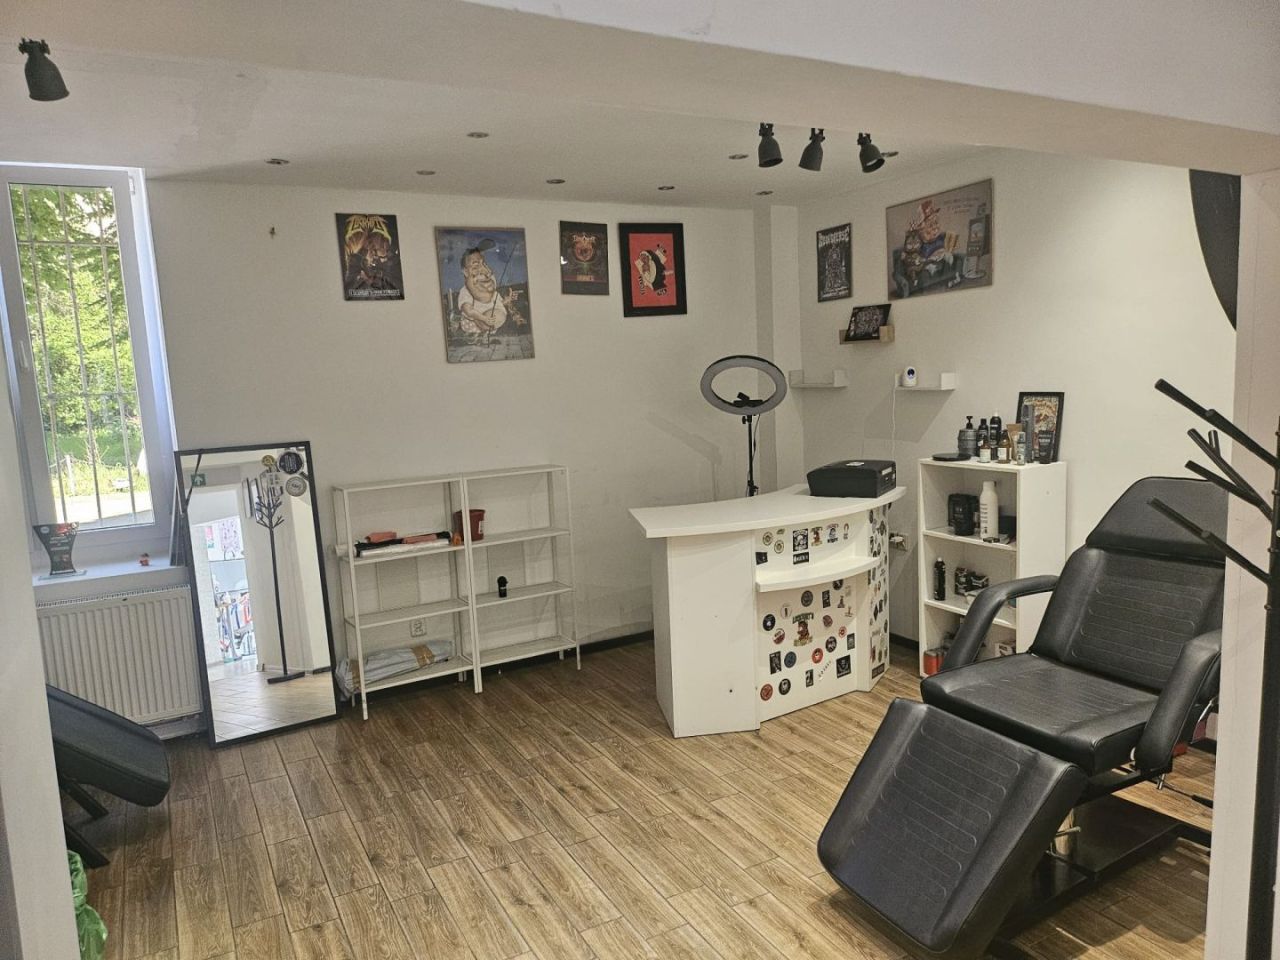 Sprzedaż Salonu Barbershop z kompletnym wyposażeniem i bazą Klientów: zdjęcie 93938687